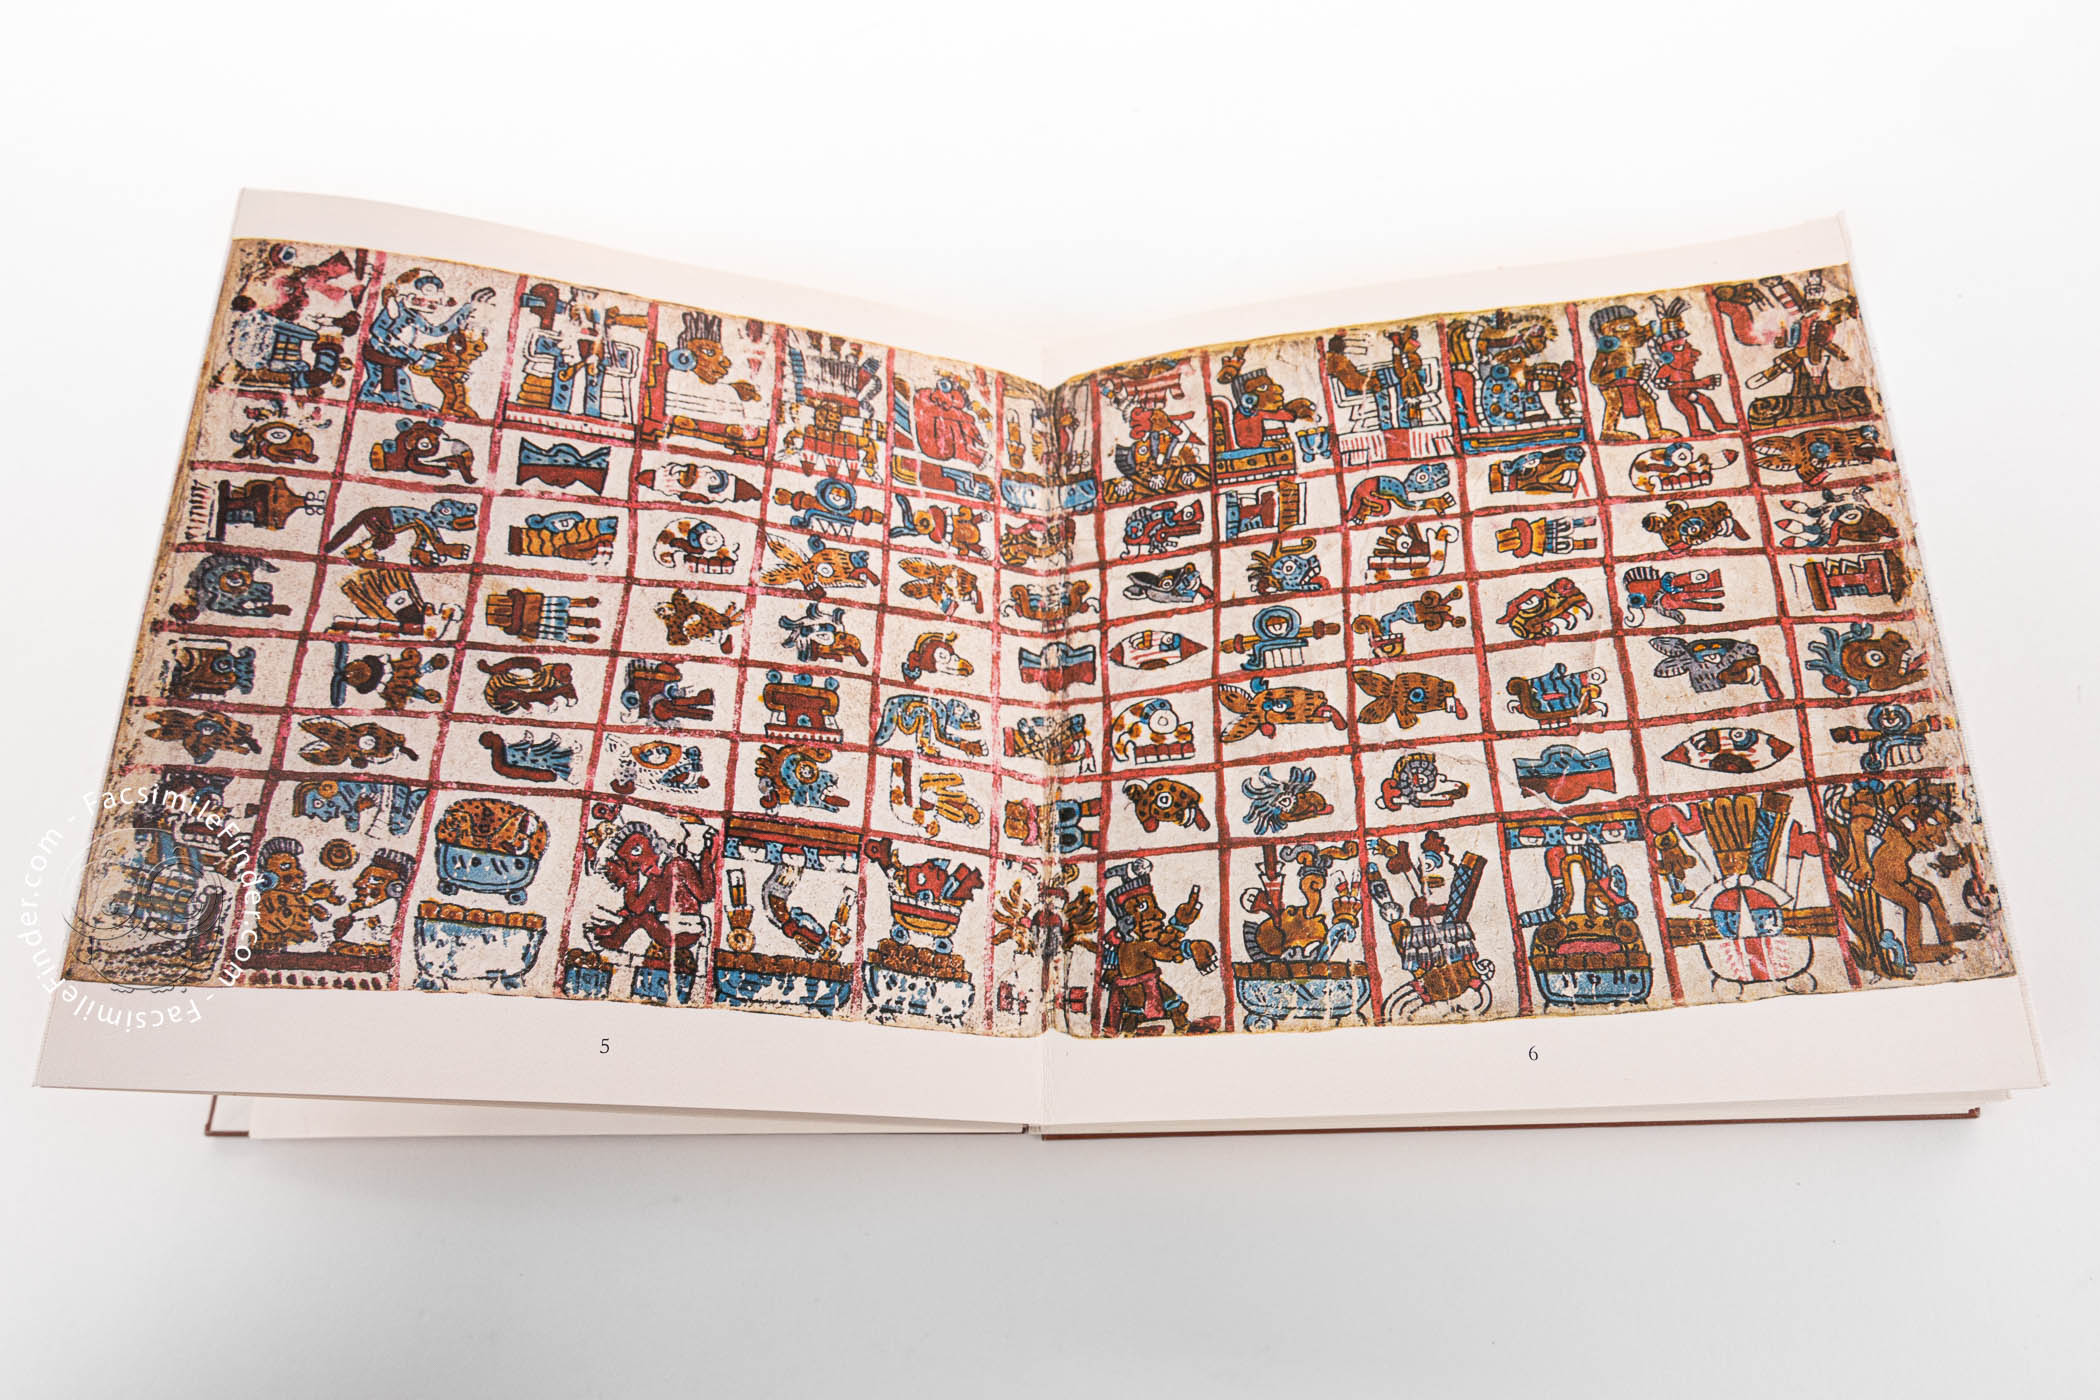 Codex Vaticanus B 3773 Facsimile Edition